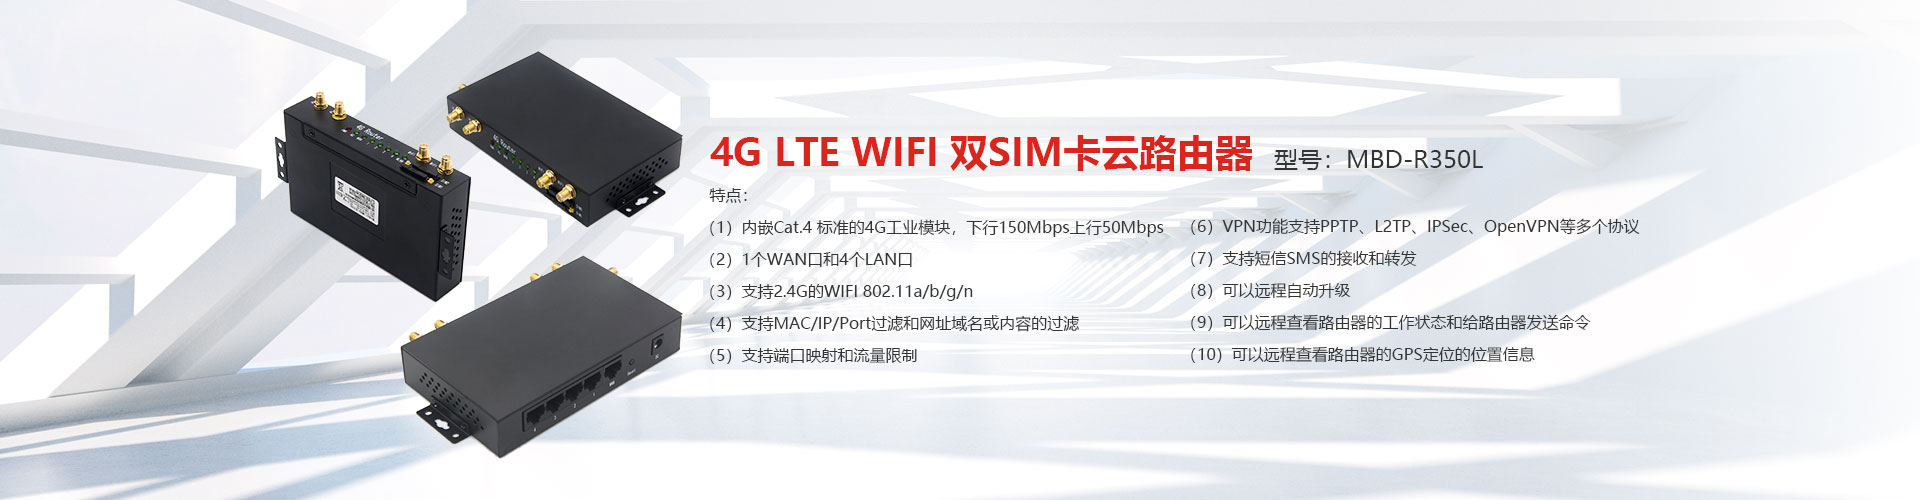 5G+WIFI6 MbD-R650L